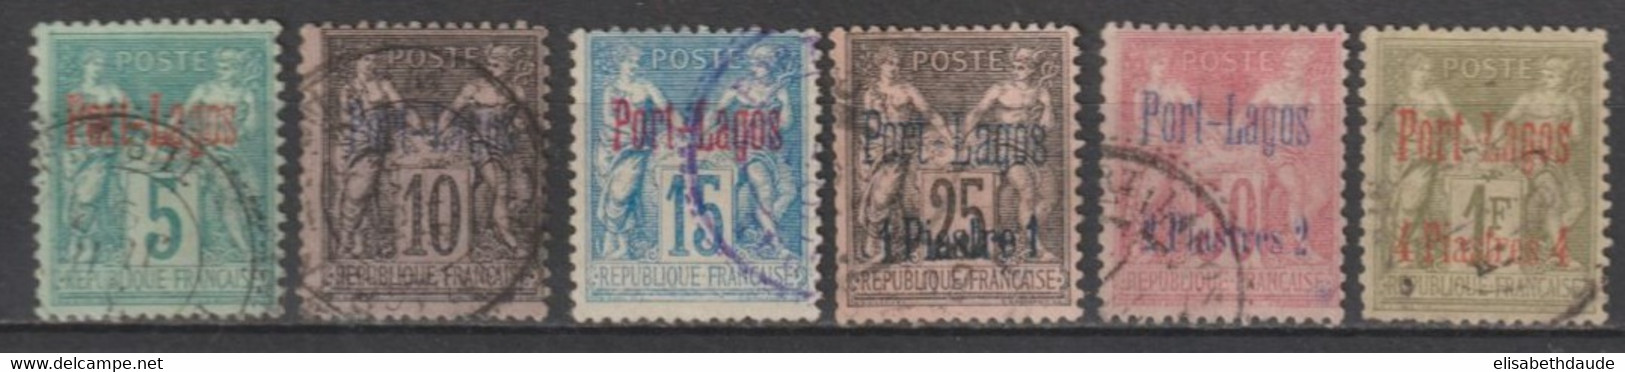 PORT LAGOS - 1893 - SERIE COMPLETE YVERT N° 1/6 OBLITERES - COTE = 500 EUR. - Usati